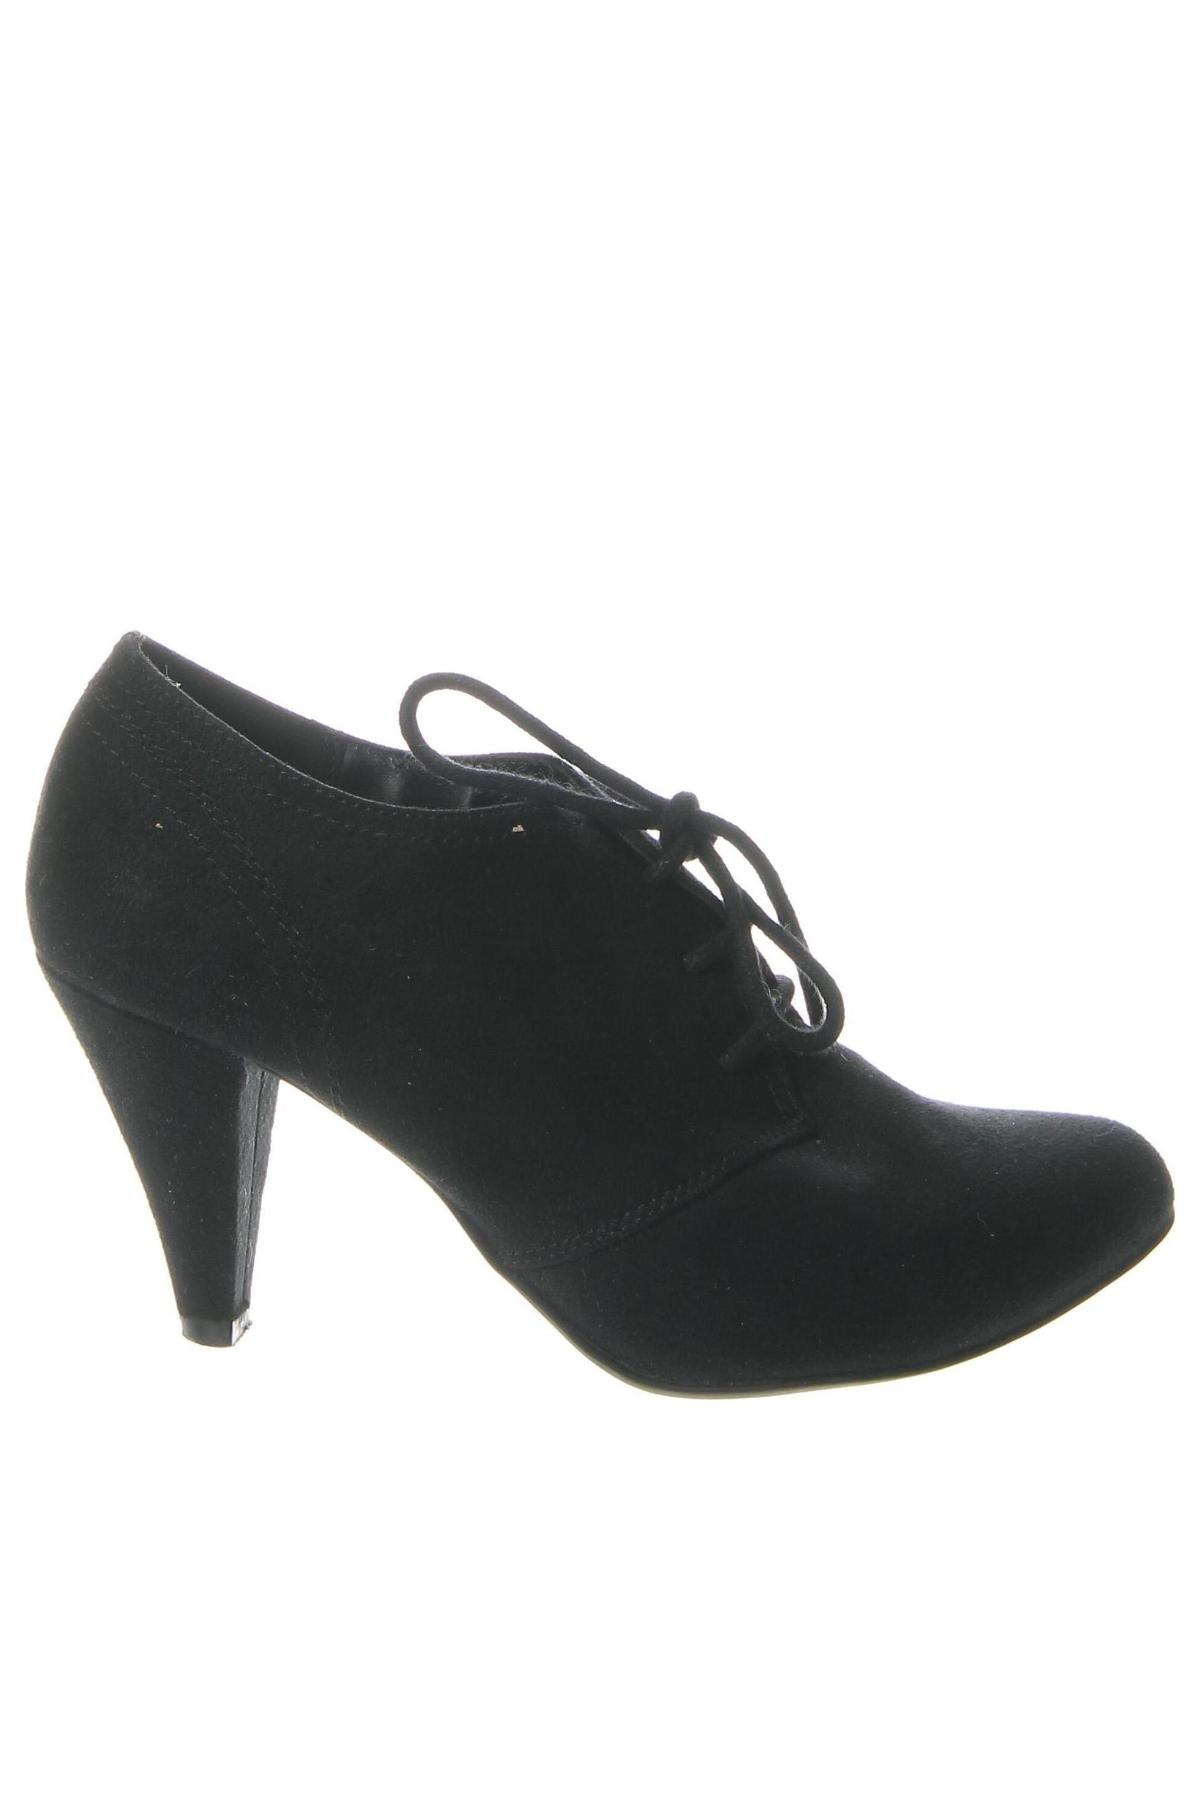 Γυναικεία παπούτσια Graceland, Μέγεθος 36, Χρώμα Μαύρο, Τιμή 1,80 €